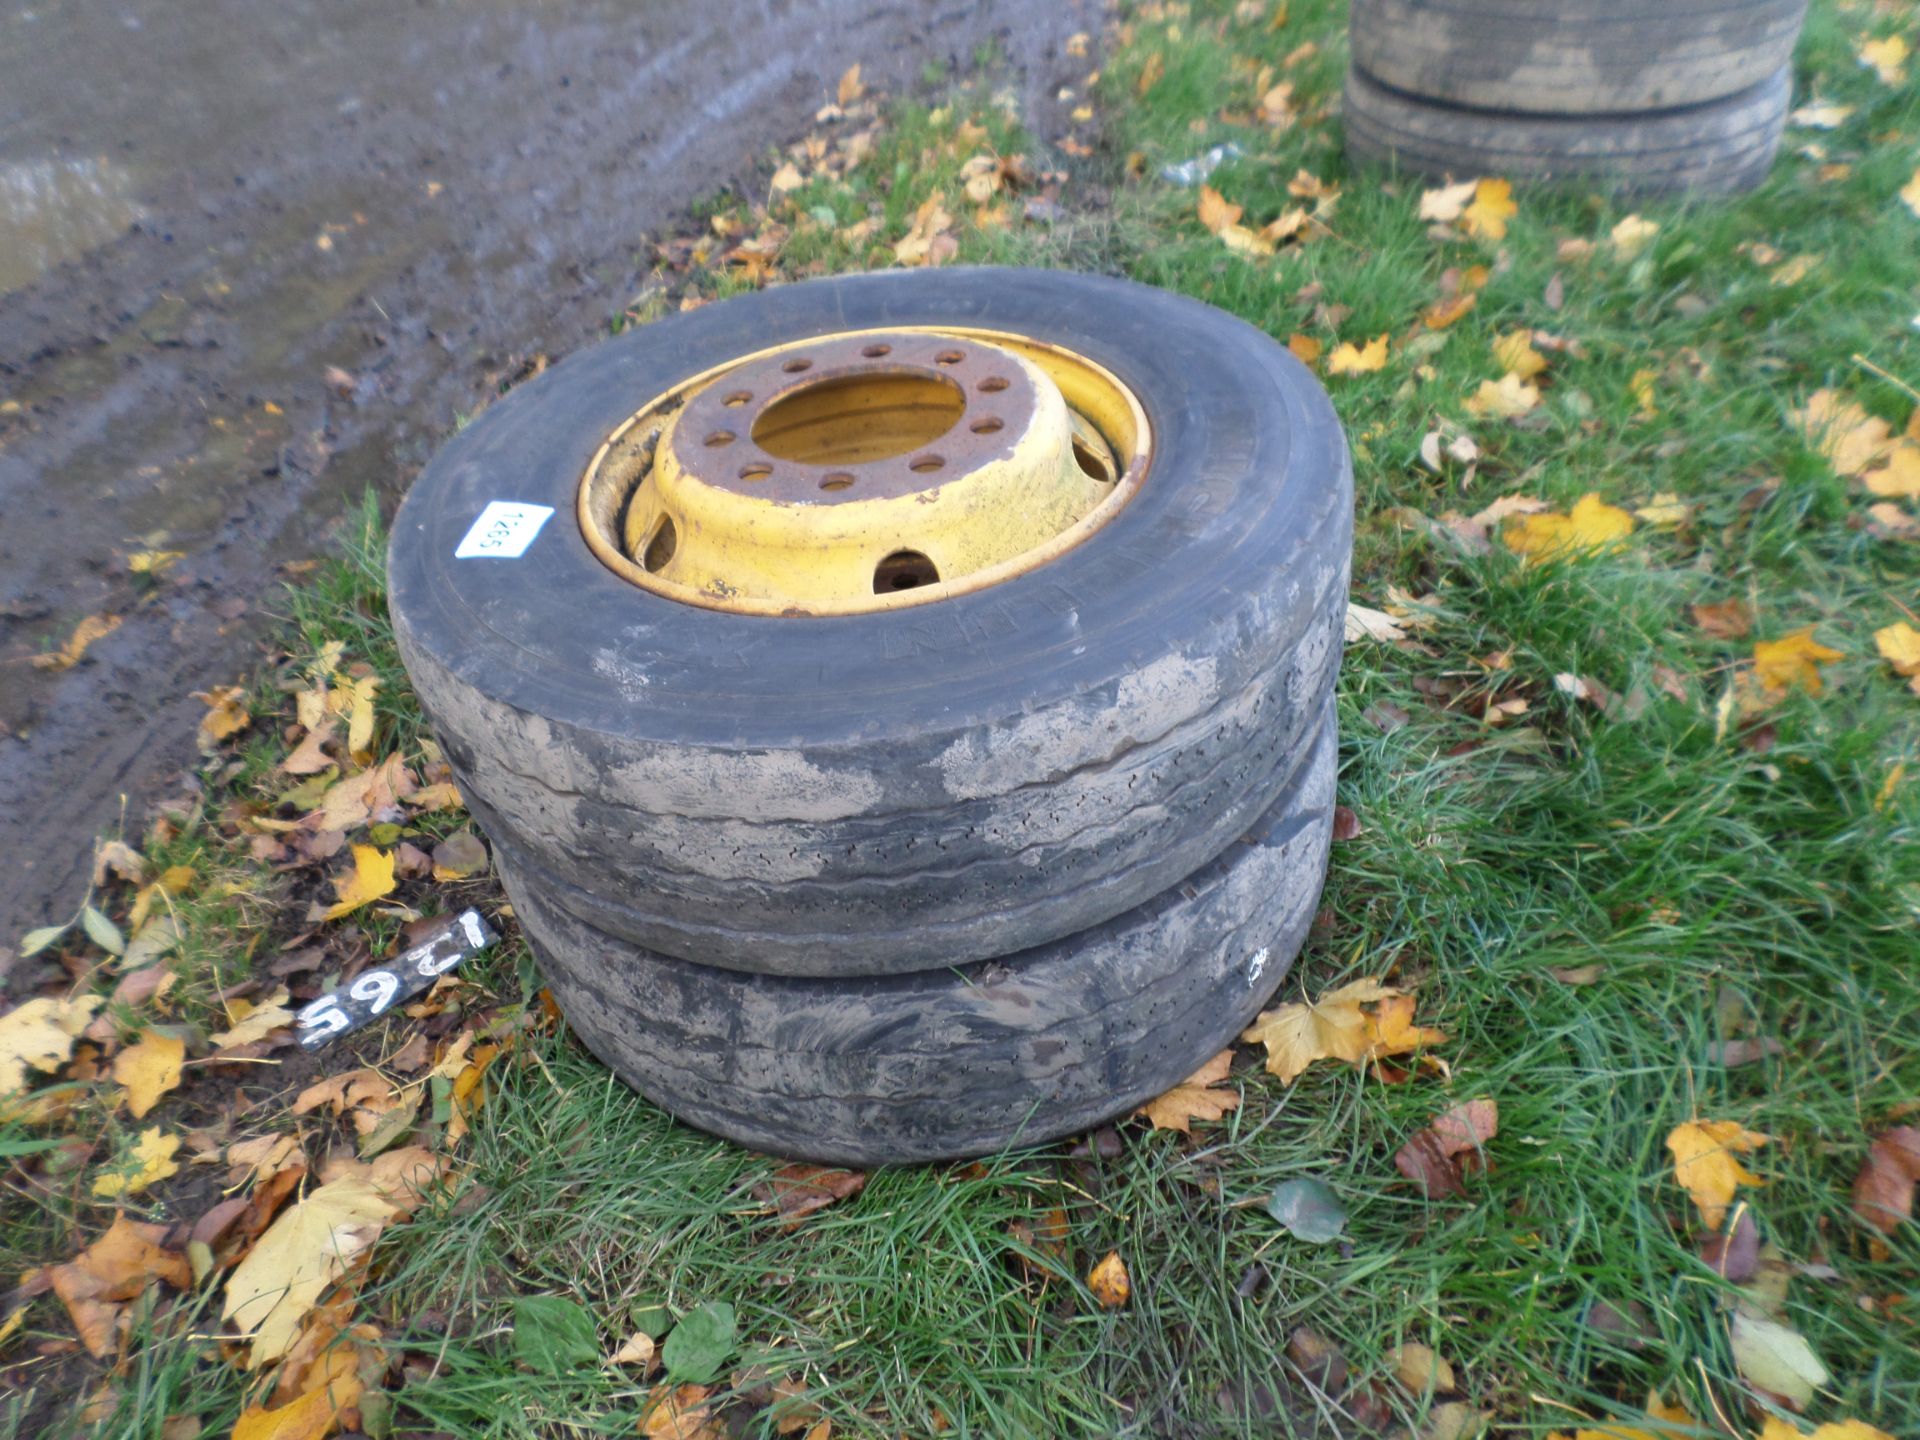 2 wheels/tyres 245/70/17.5 NO VAT